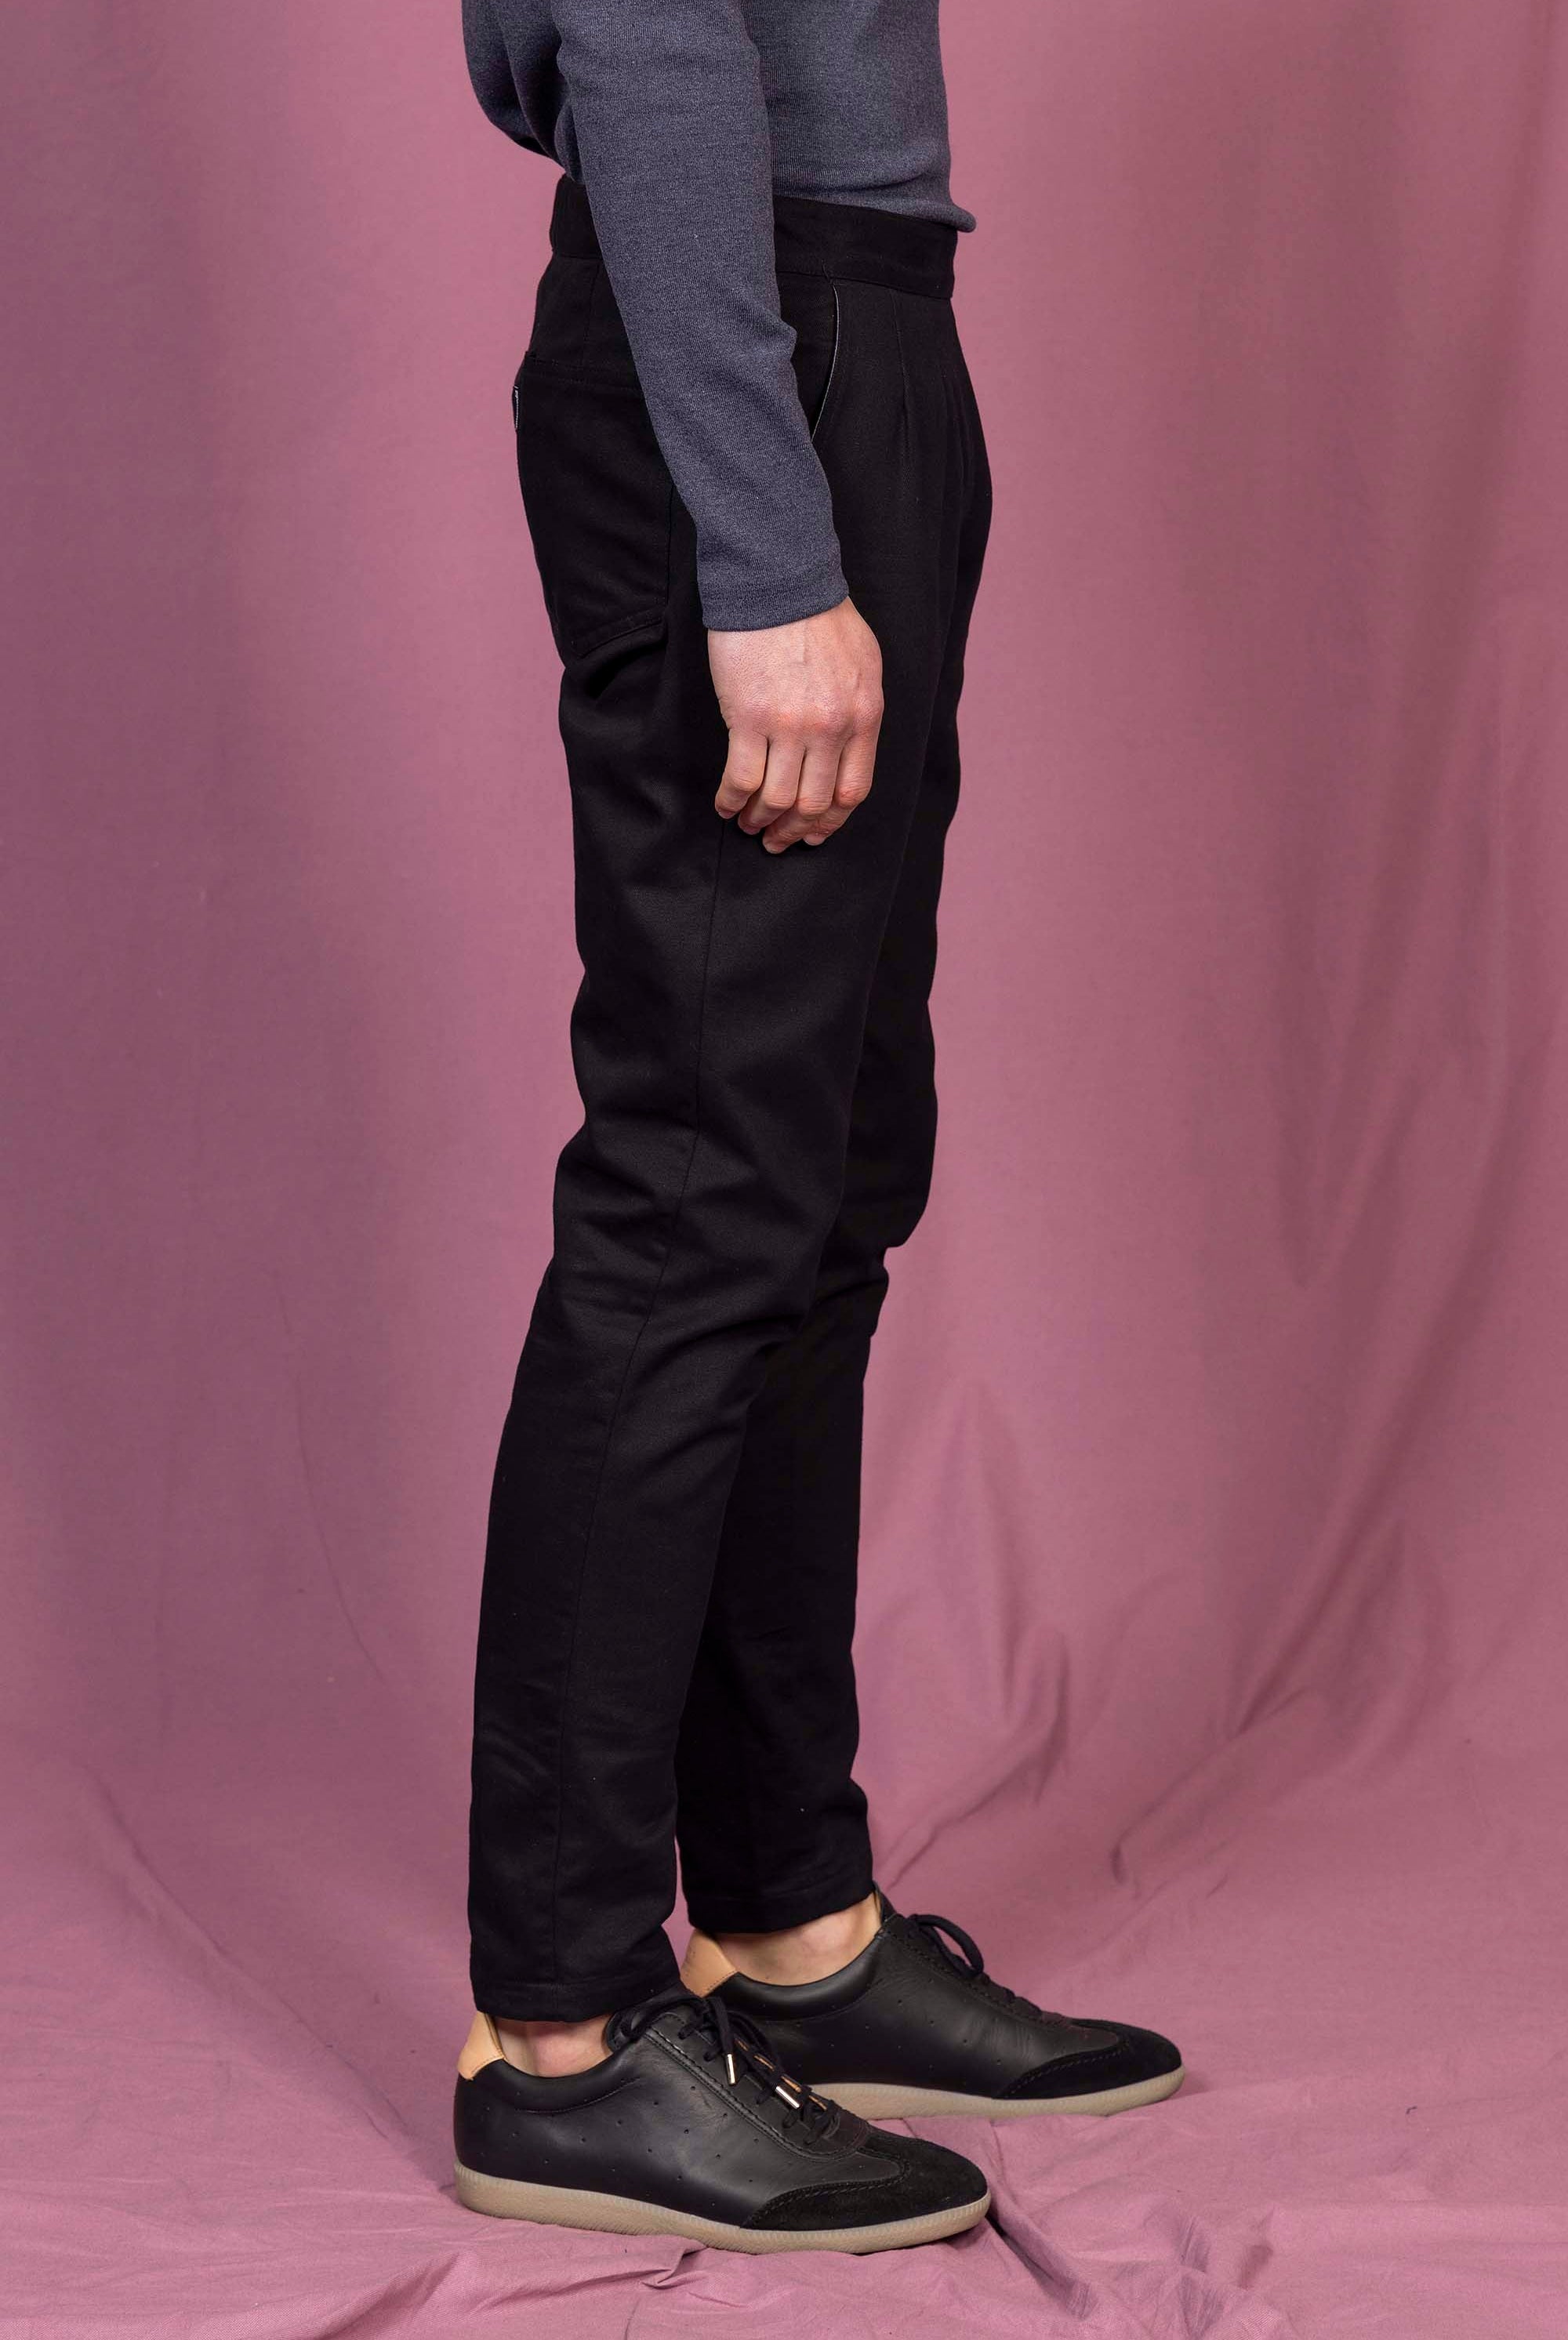 Pantalon Caiman Noir le pantalon classique affiche un esprit de distinction